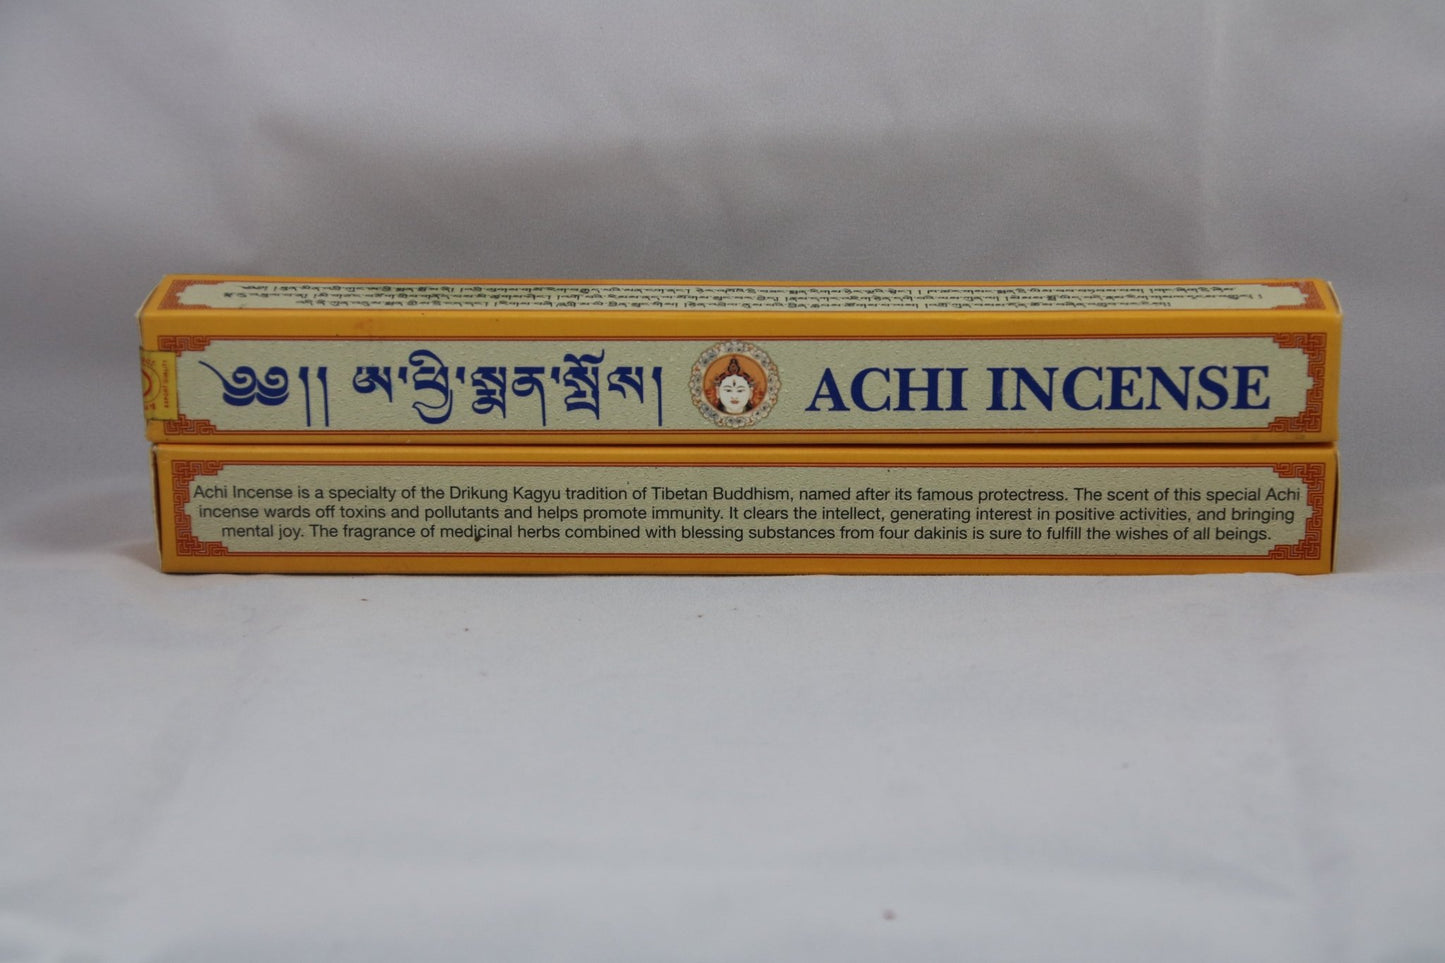 Achi Incense - Stick incense